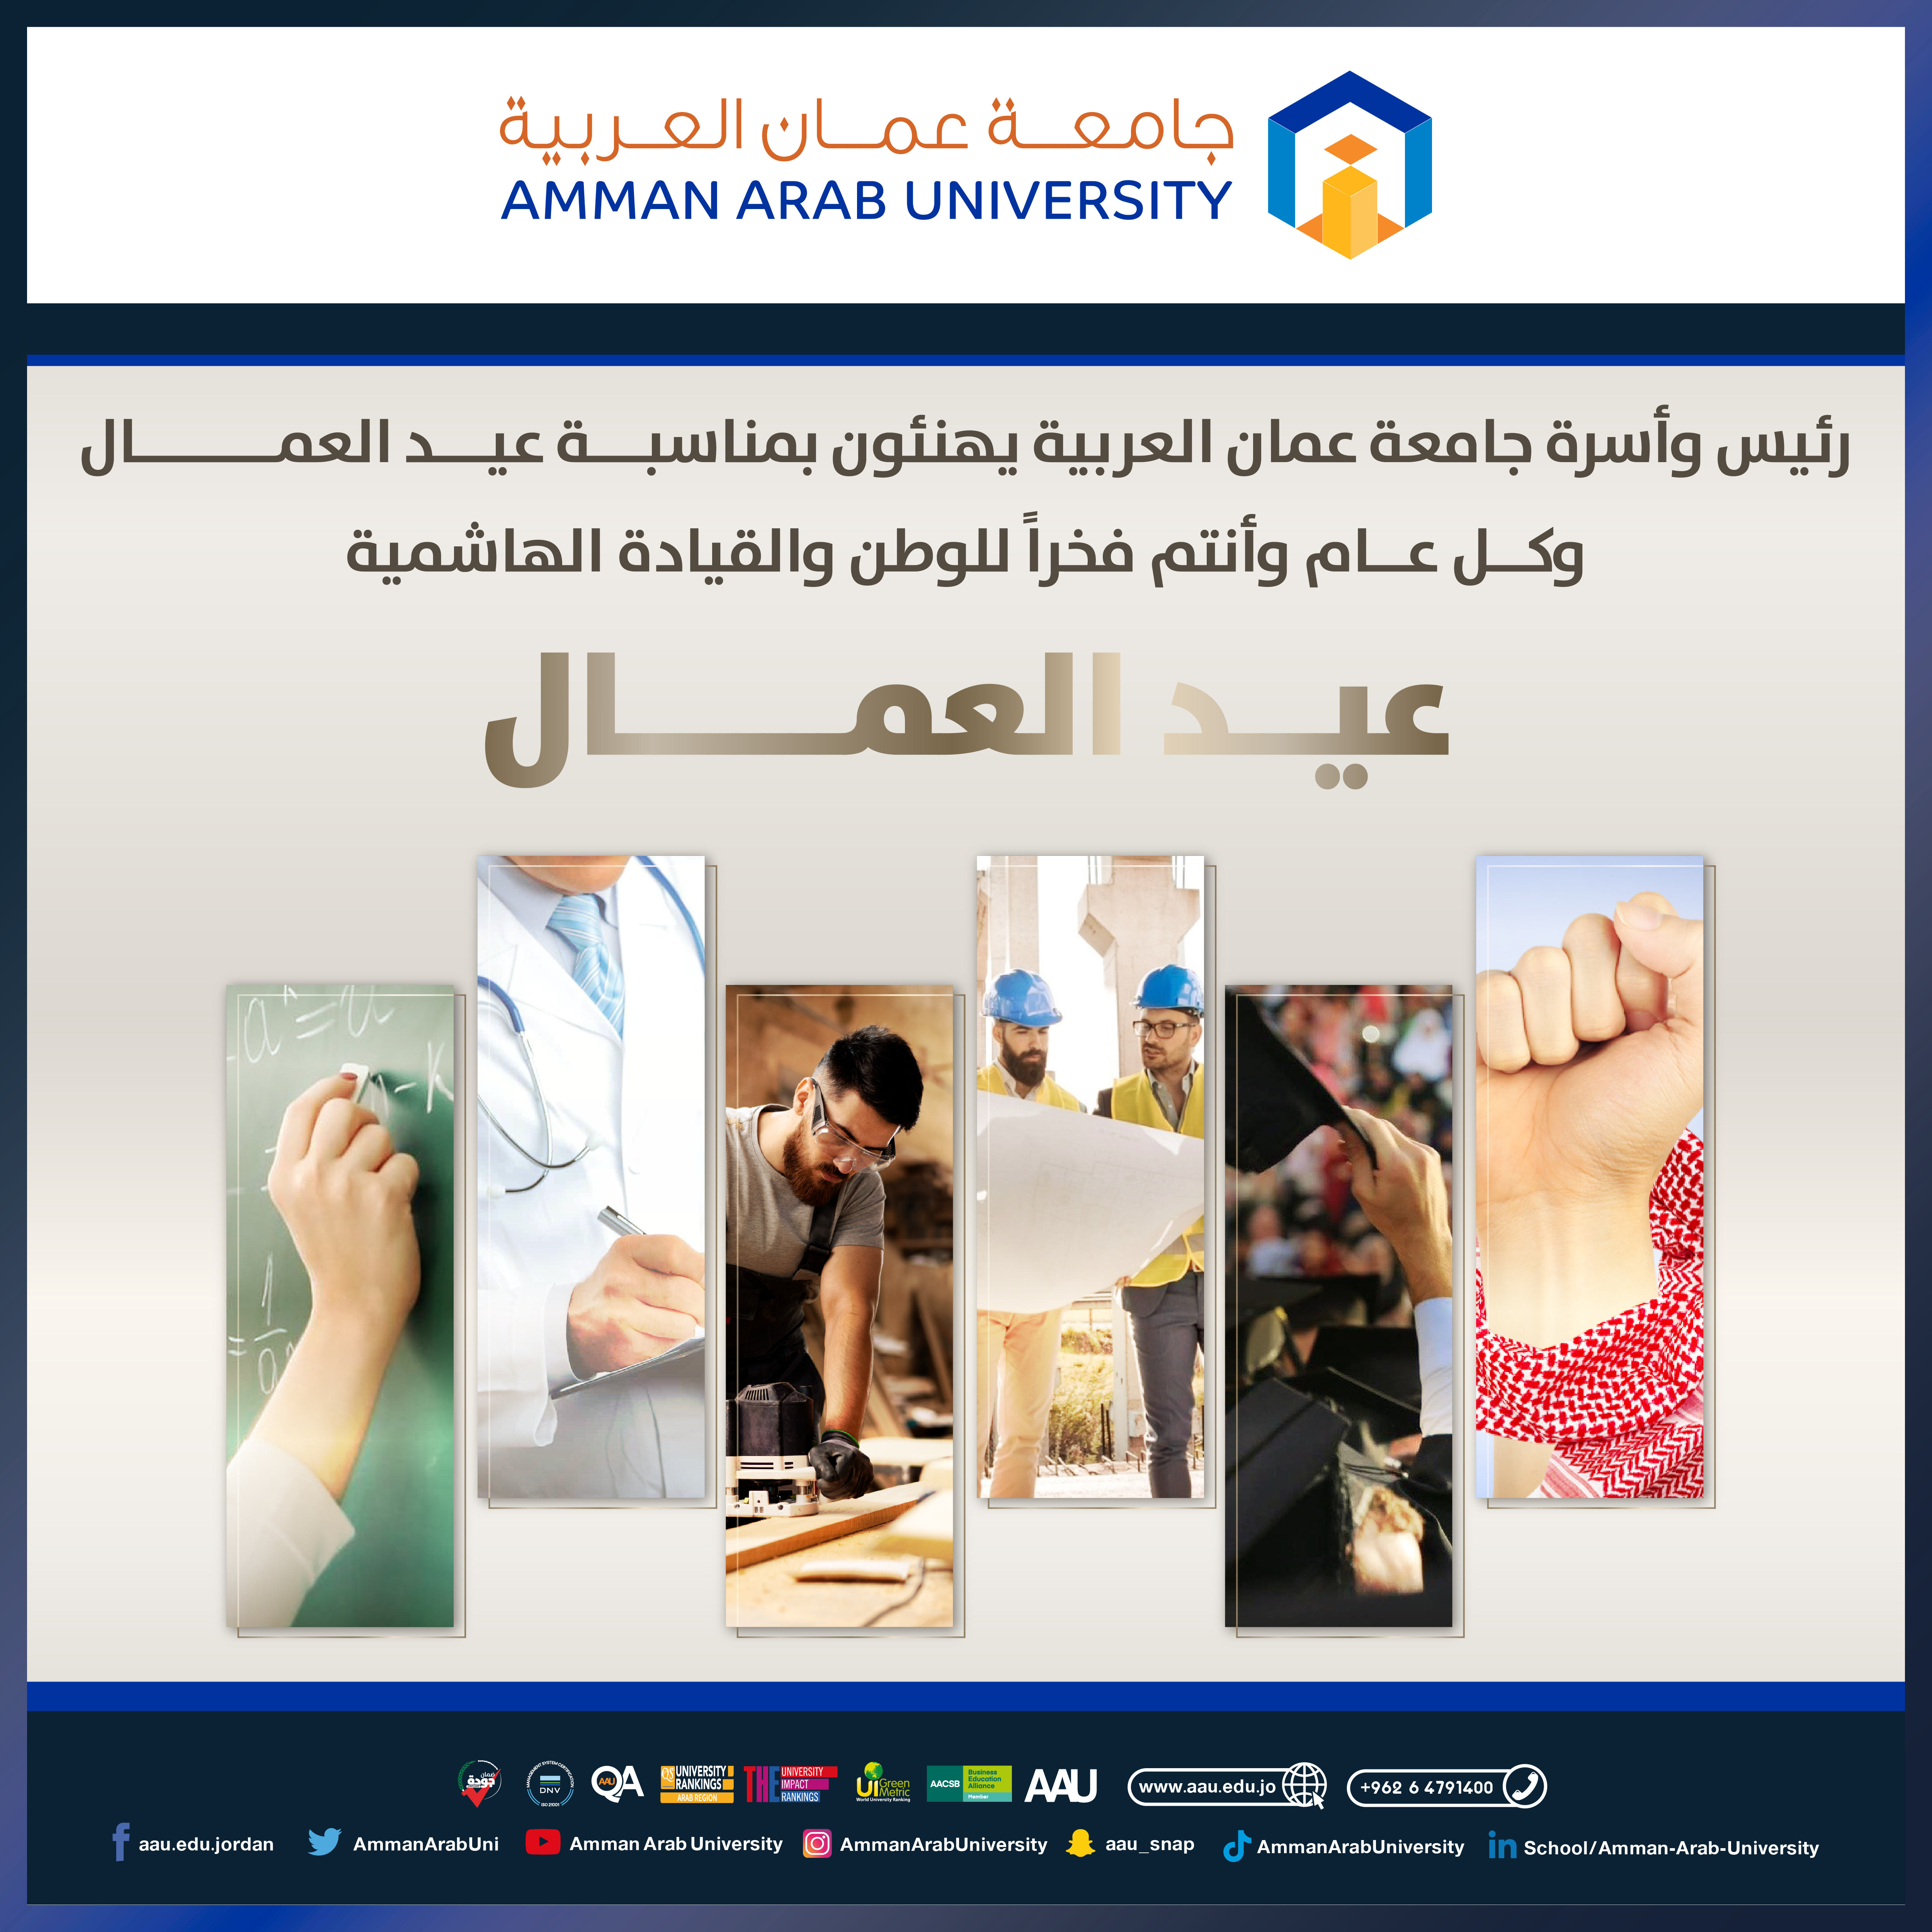 جامعة عمان العربية تهنئ بعيد العمال